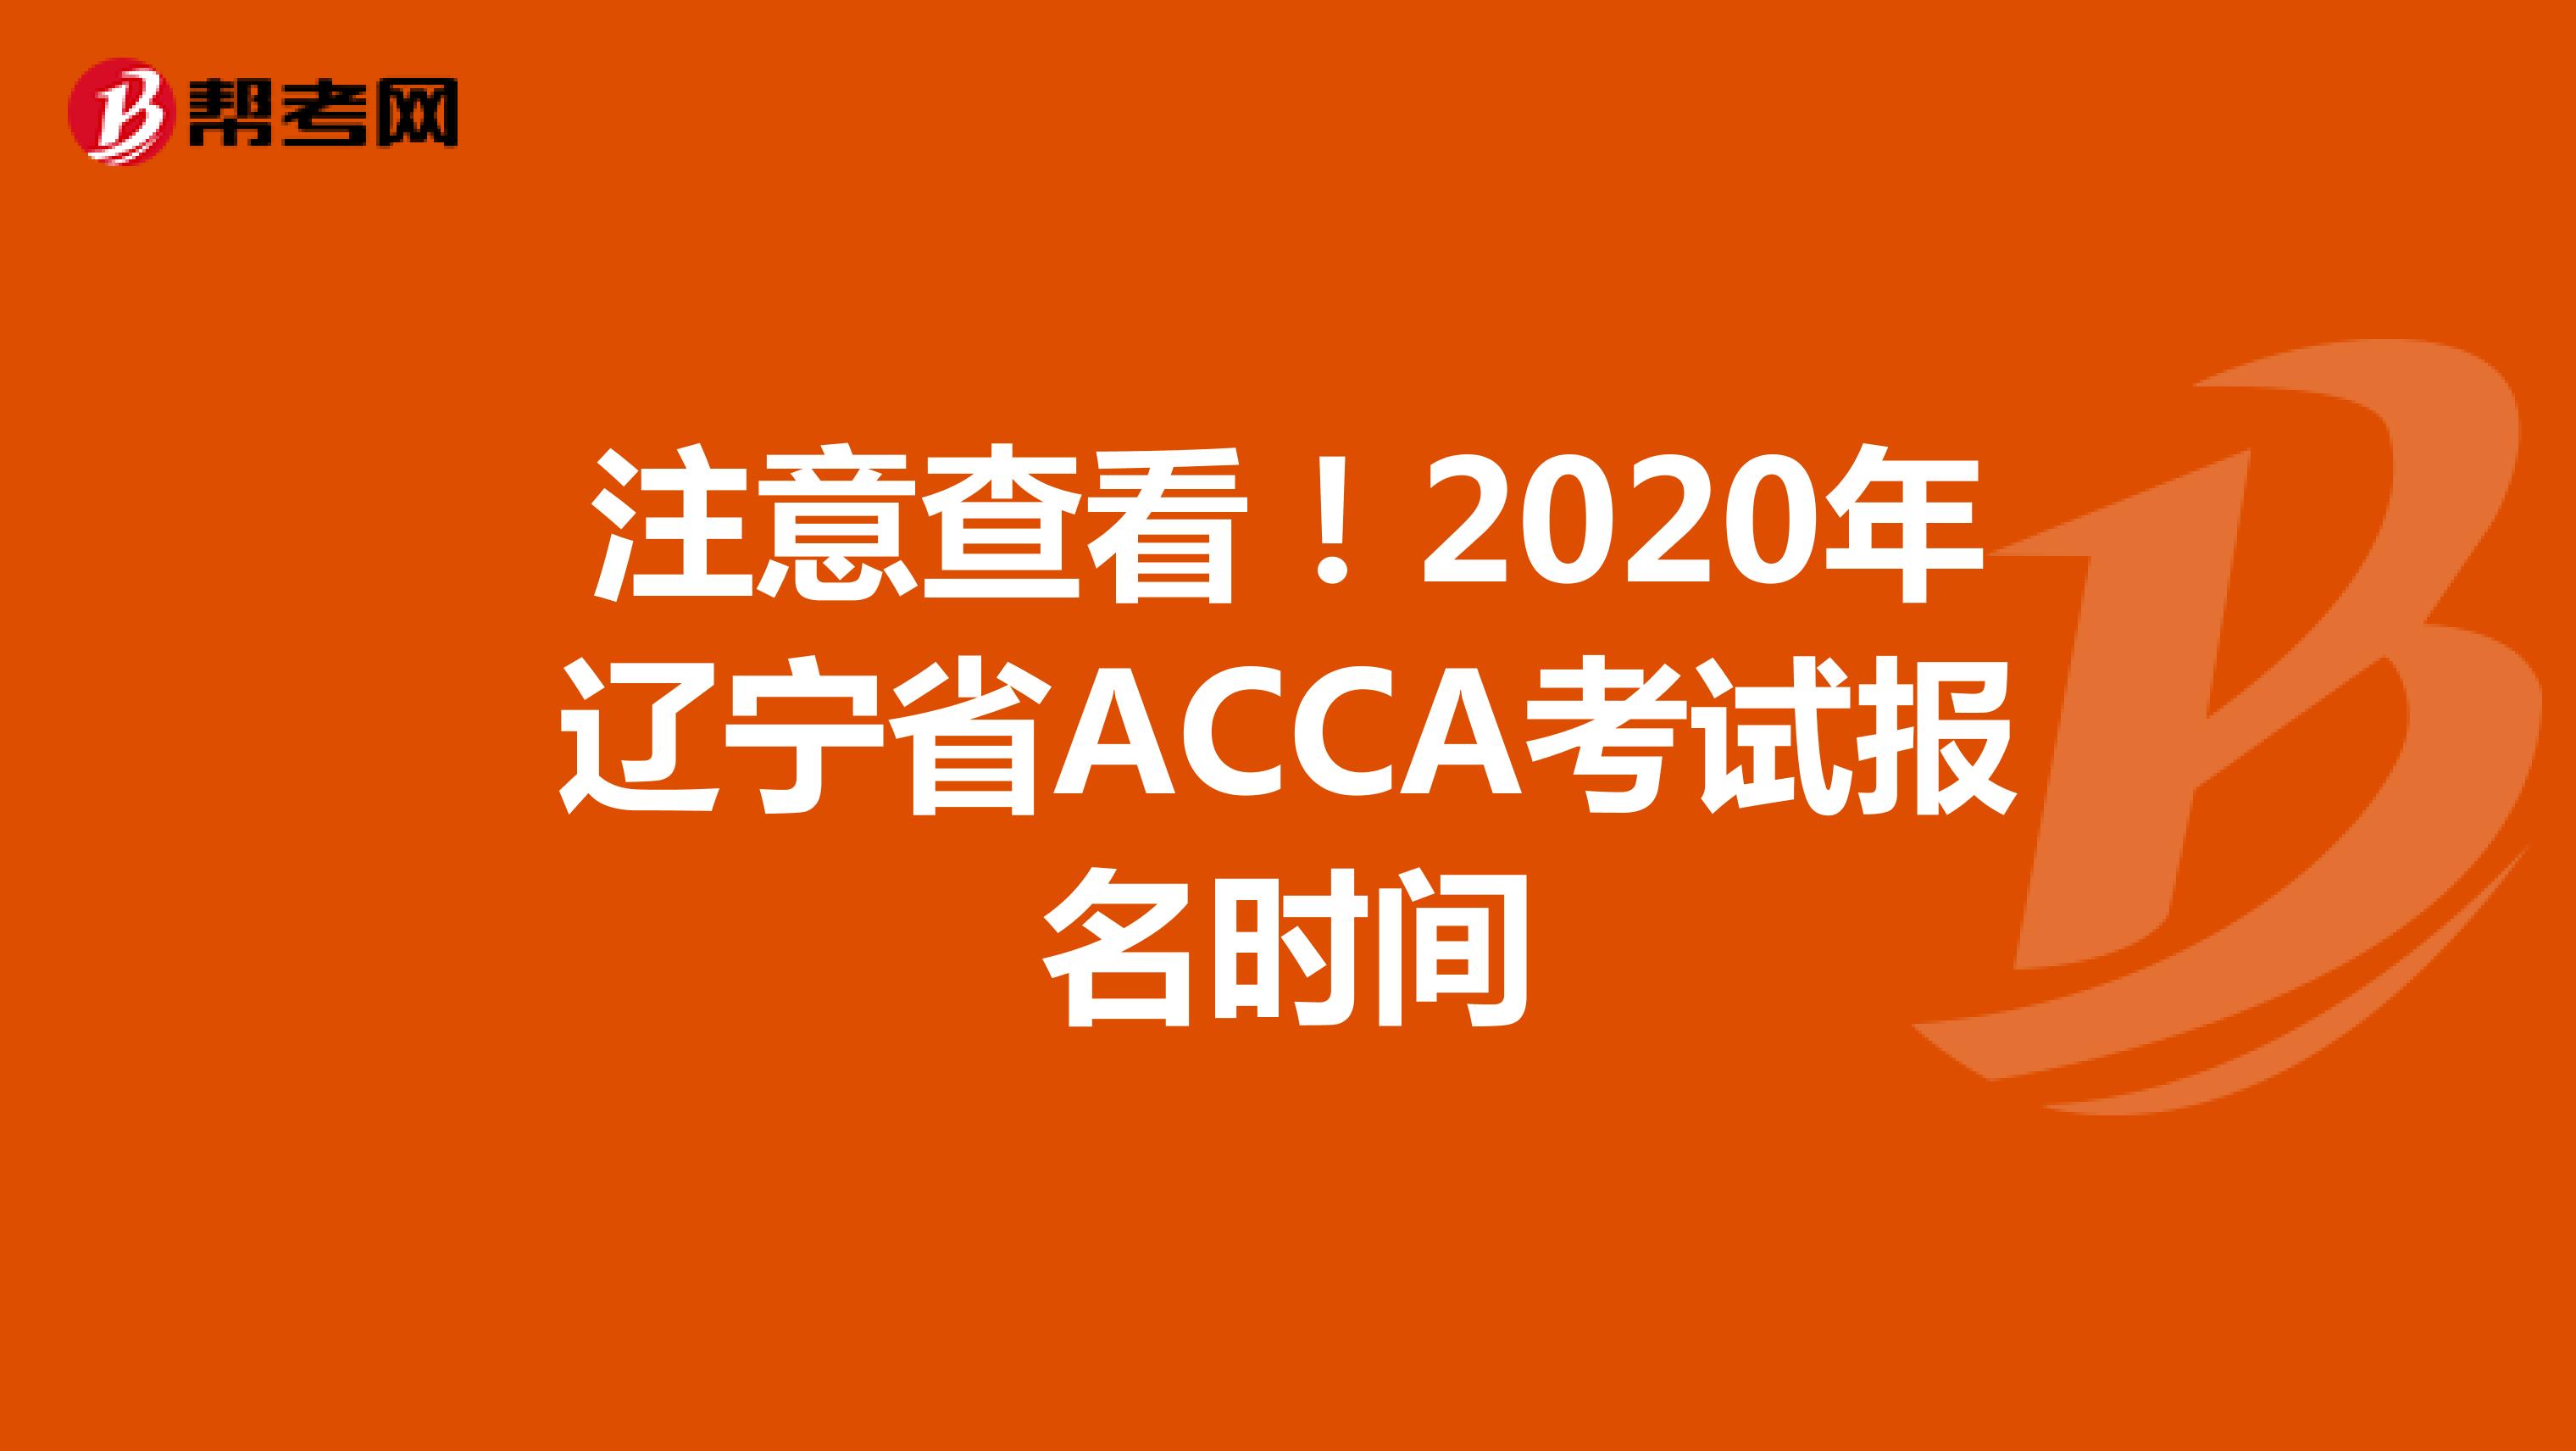 注意查看！2020年辽宁省ACCA考试报名时间